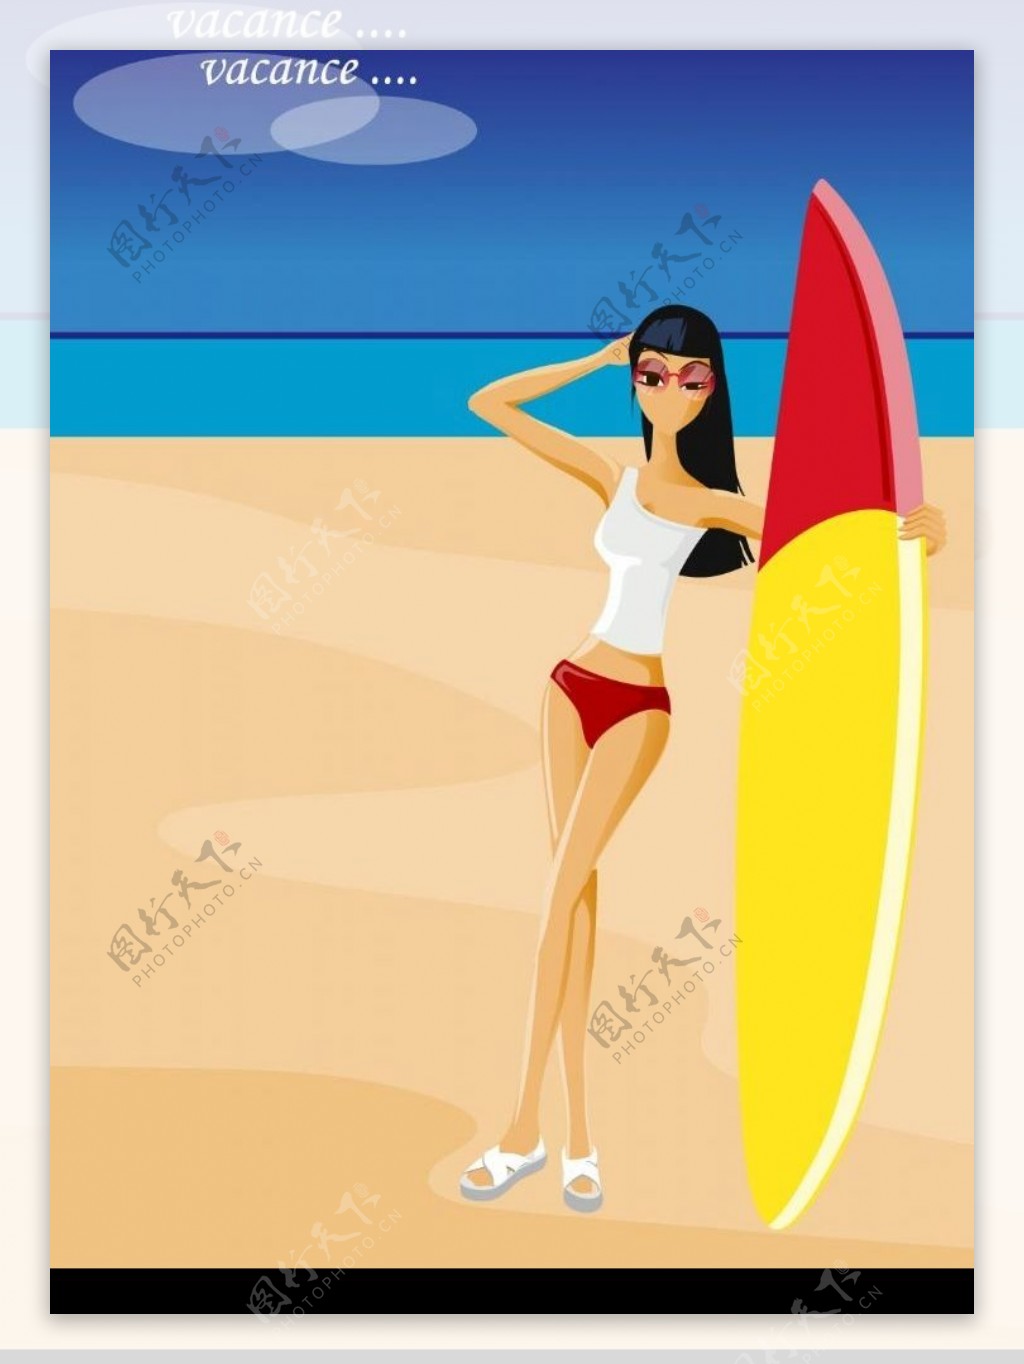 海边冲浪的女人图片